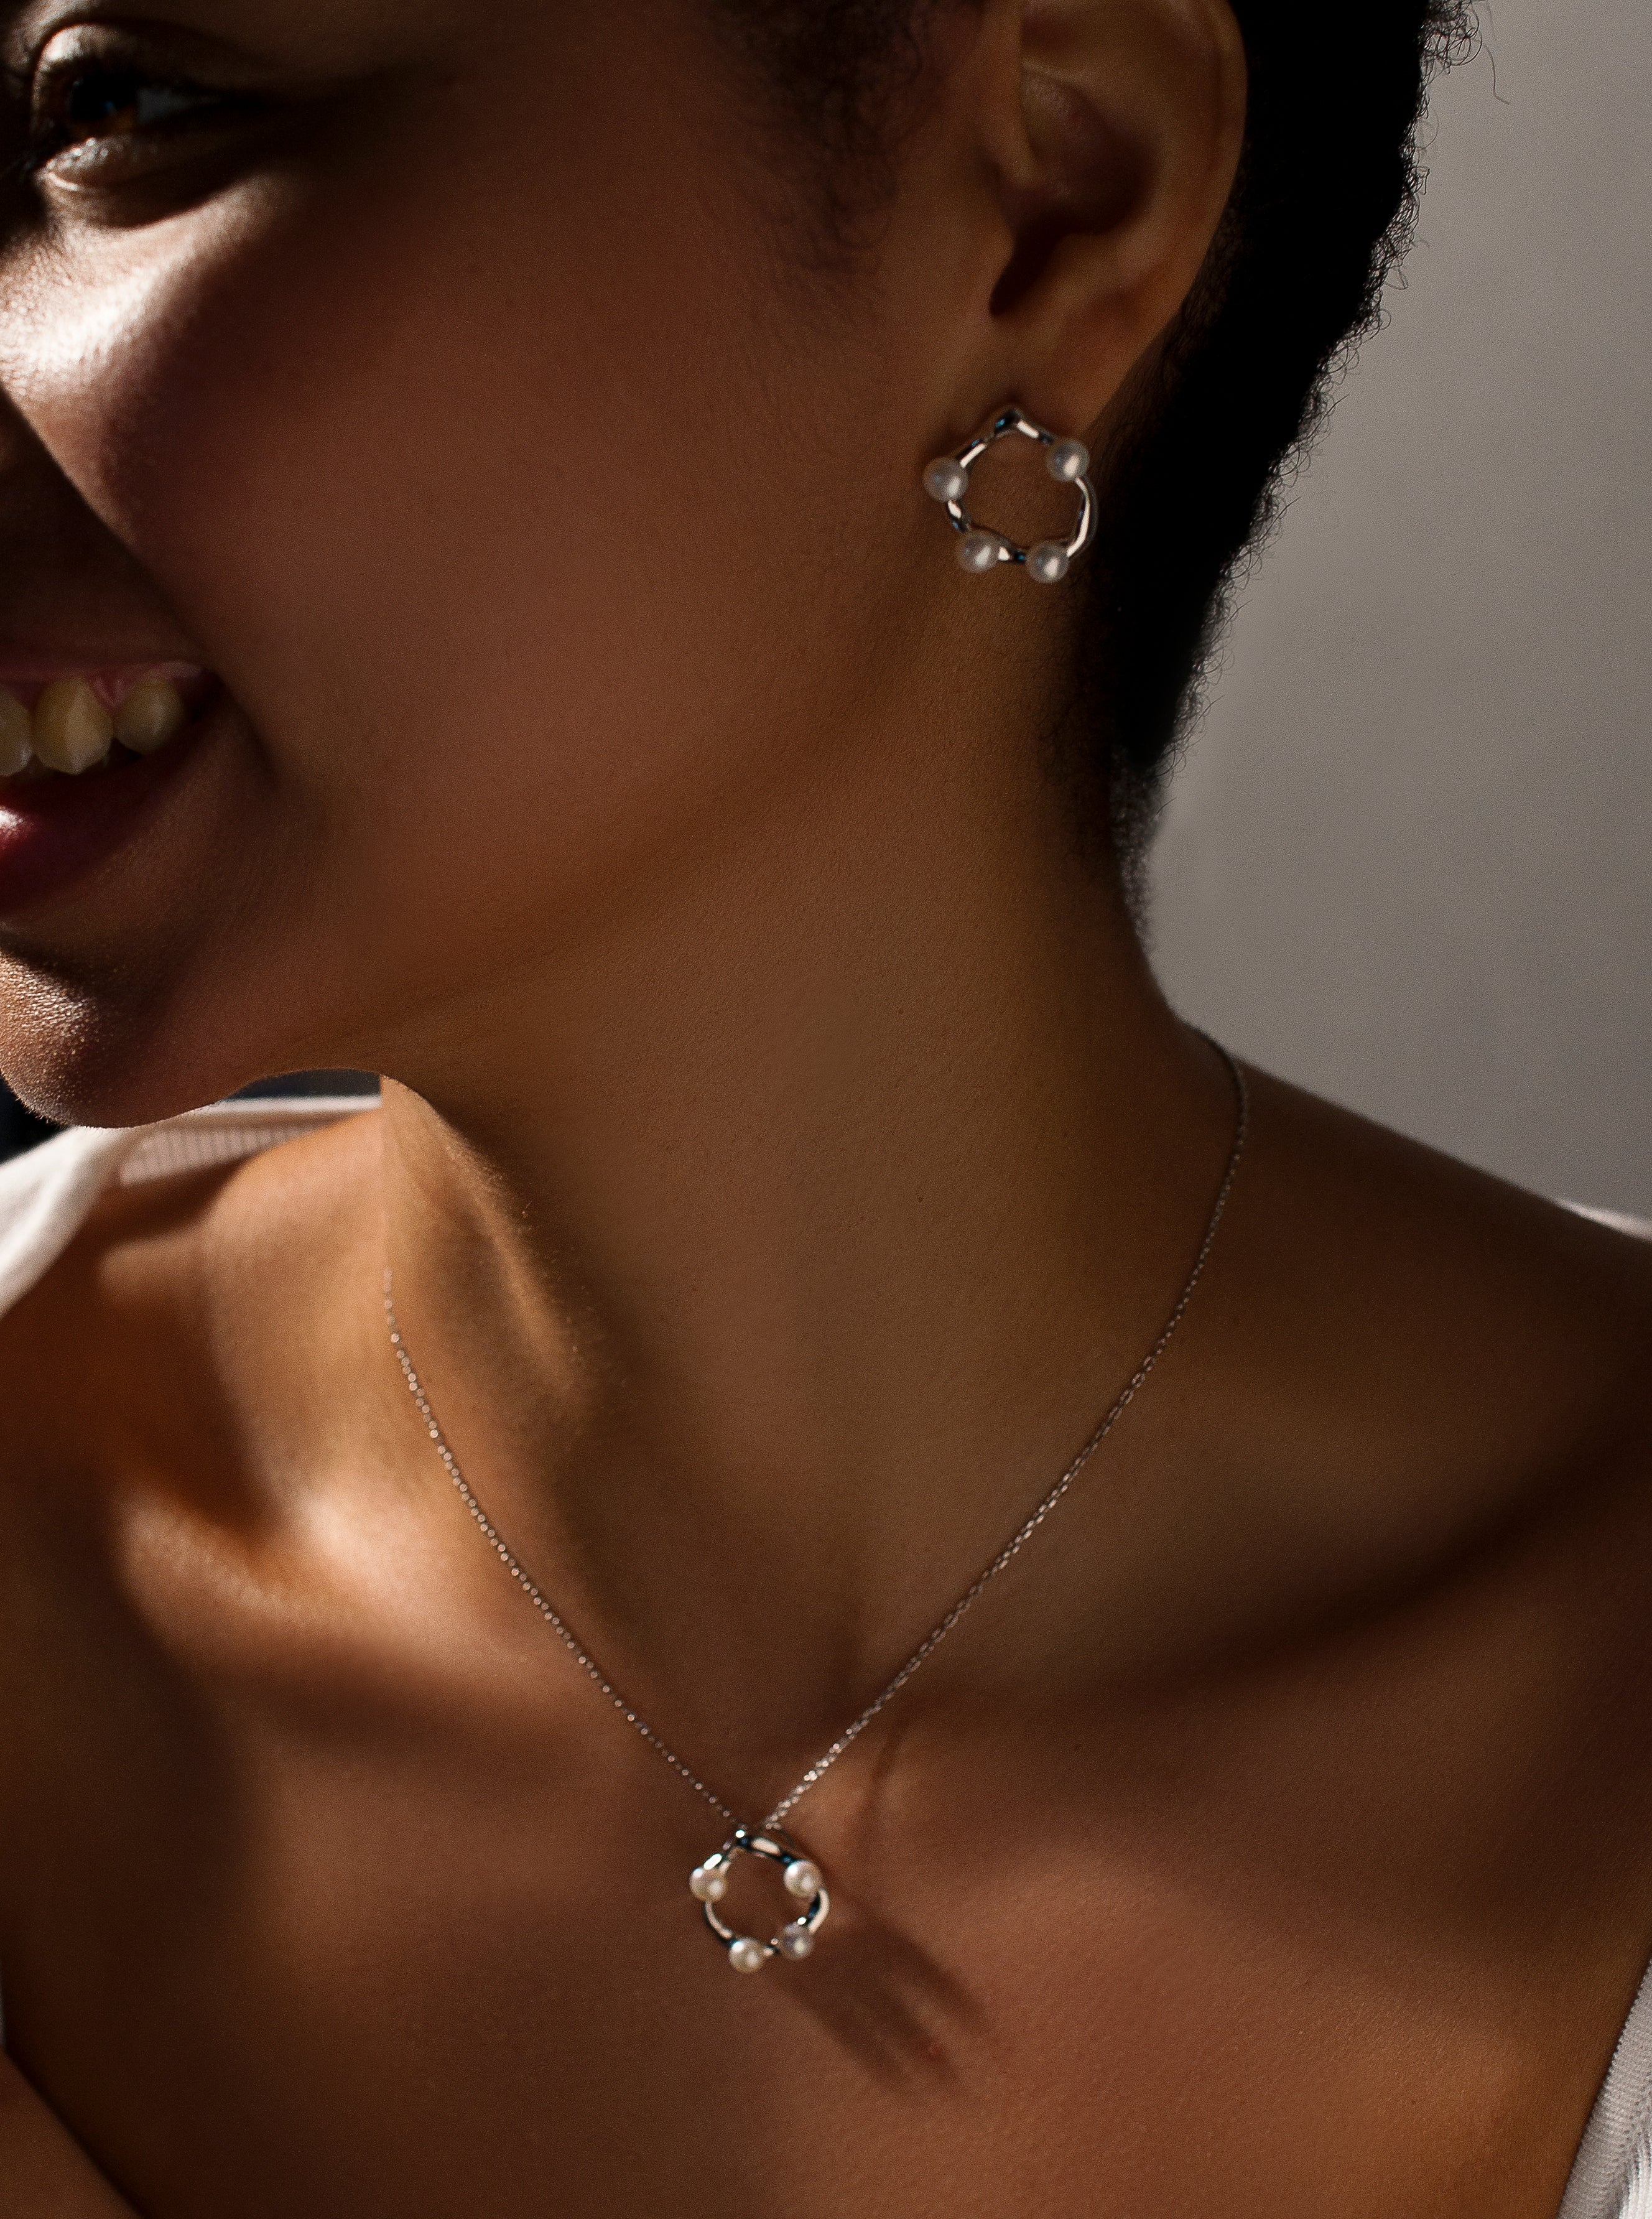 Collares originales de plata diseño irregular con mini perlas incrustadas